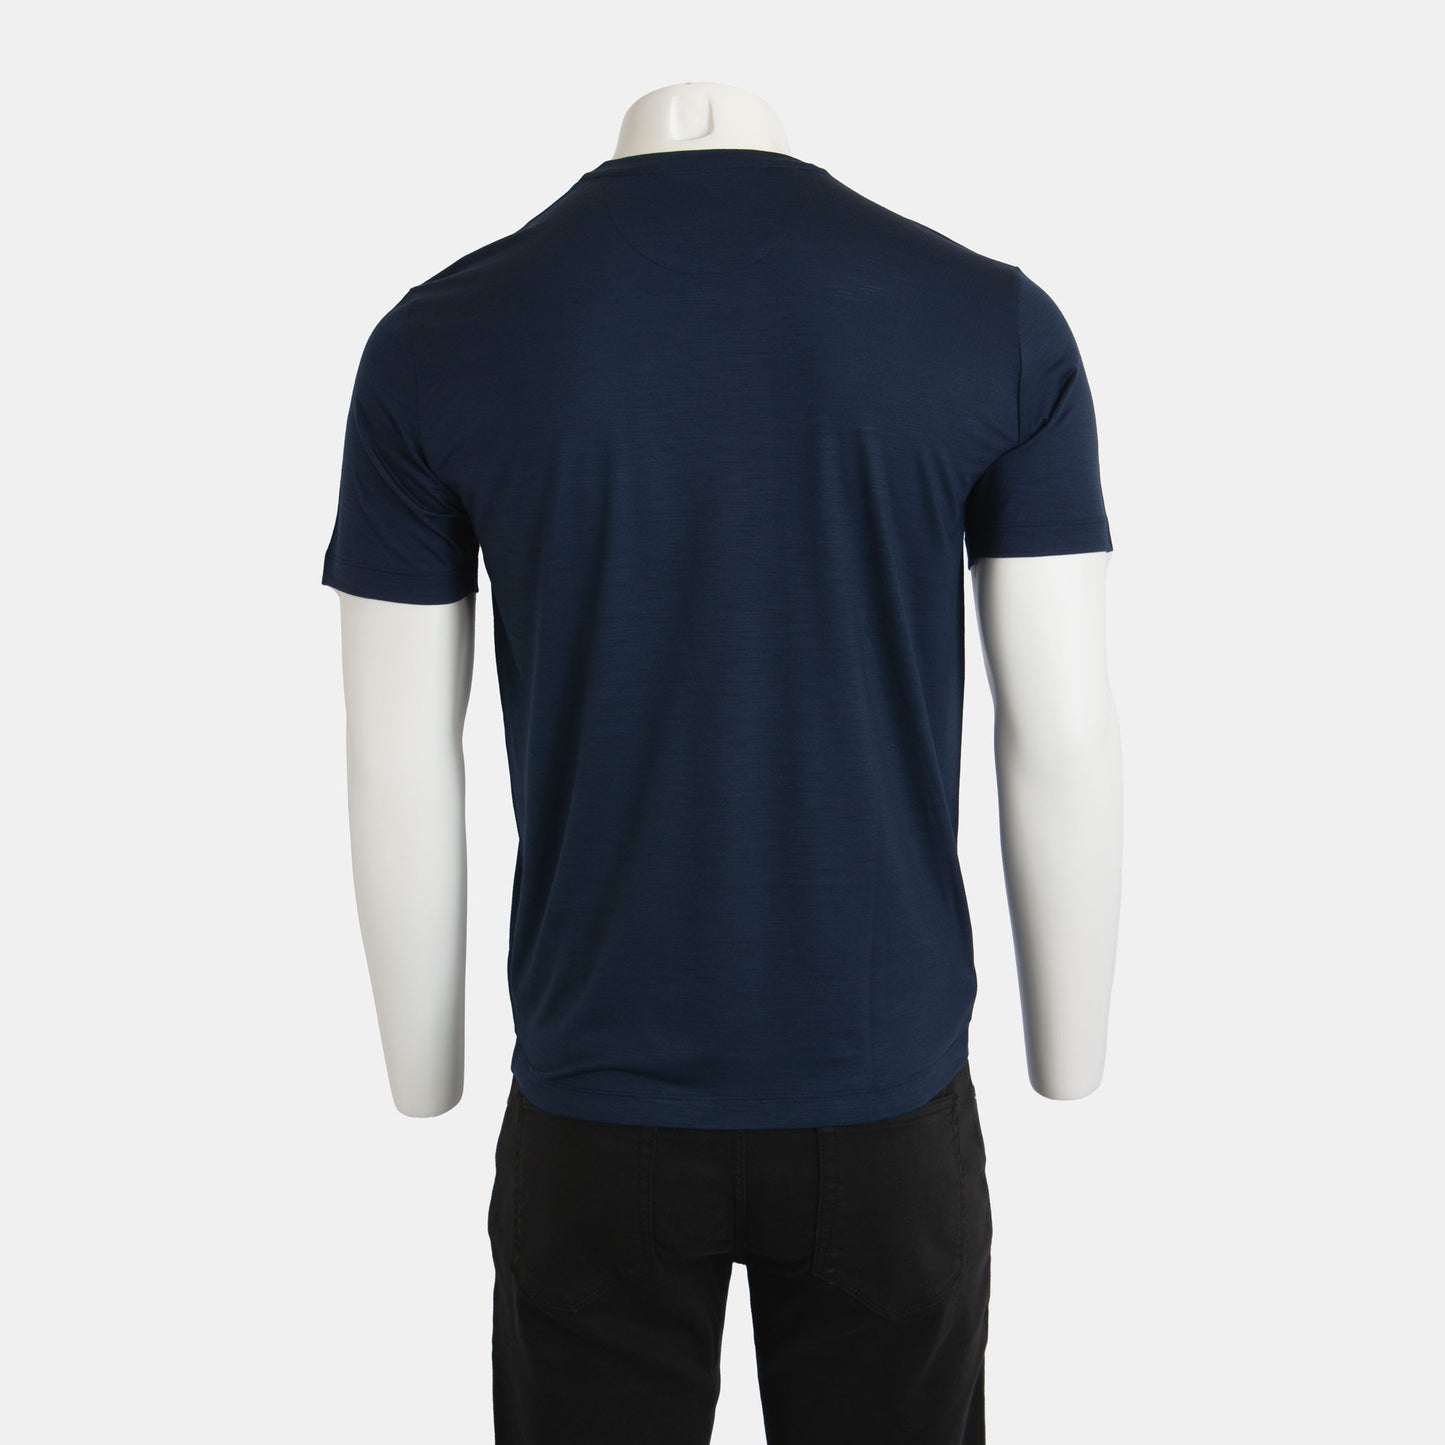 Maurizio Baldassari - The Pure Merino Wool T-Shirt in Navy